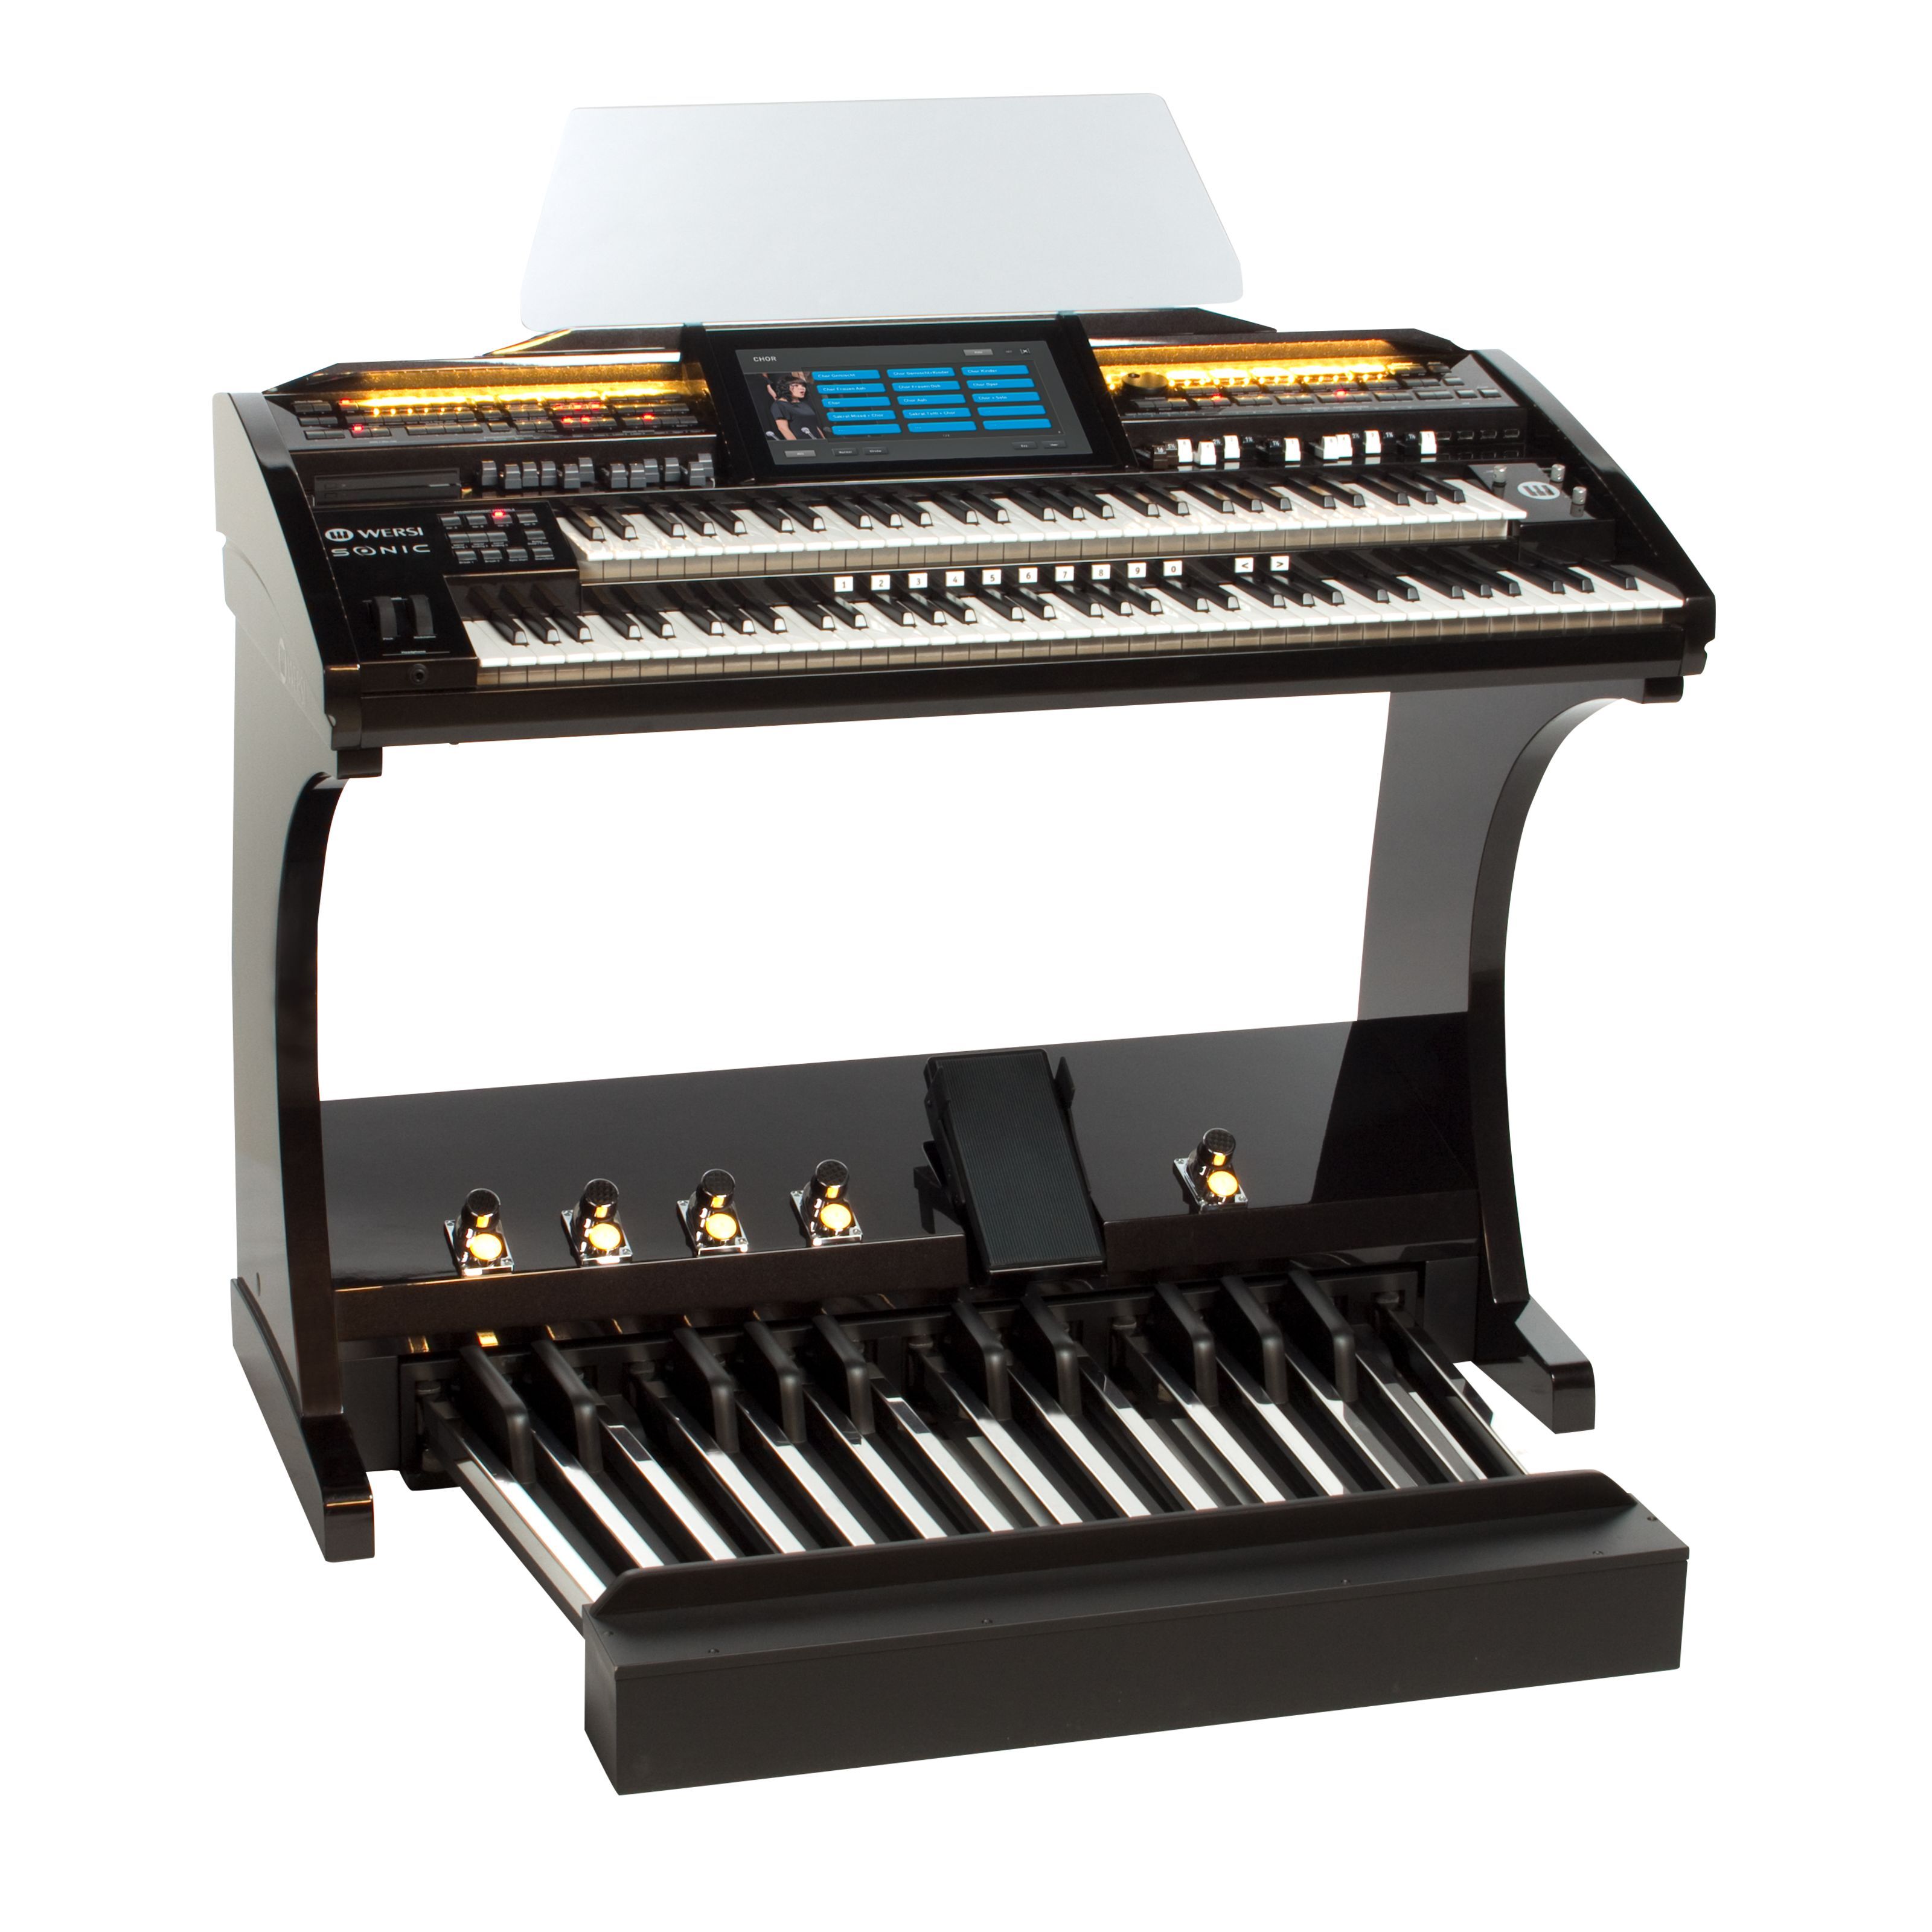 Wersi SONIC Orgel OAX700 Schwarz Metallic inkl. 25-Tastenpedal und Sitzbank - Elektronische Orgel